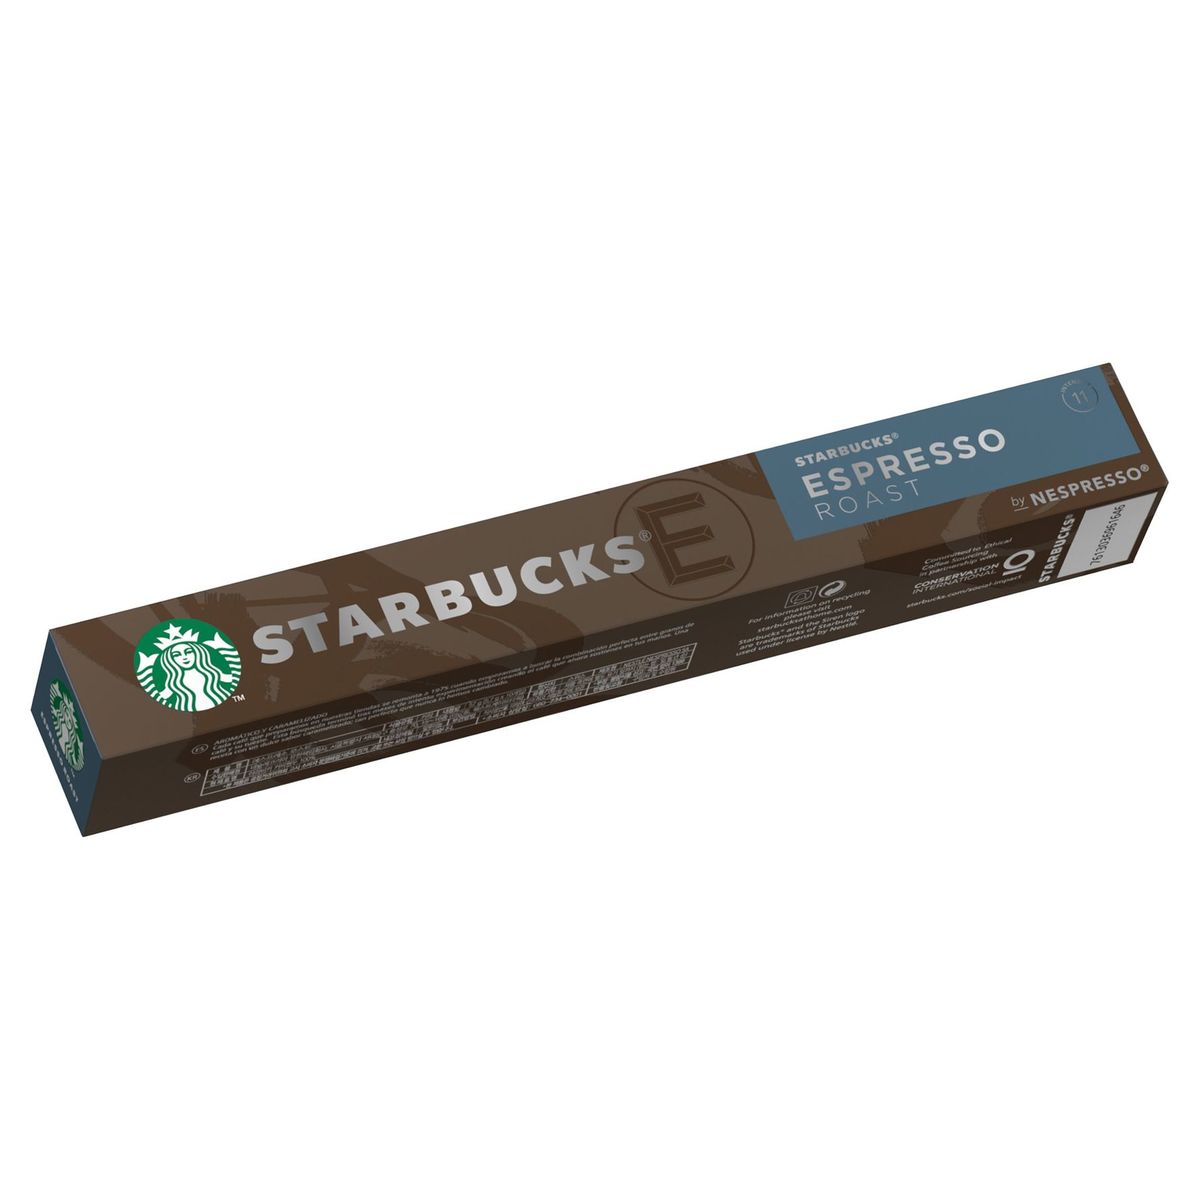 Café STARBUCKS by NESPRESSO Espresso Roast 10 capsules